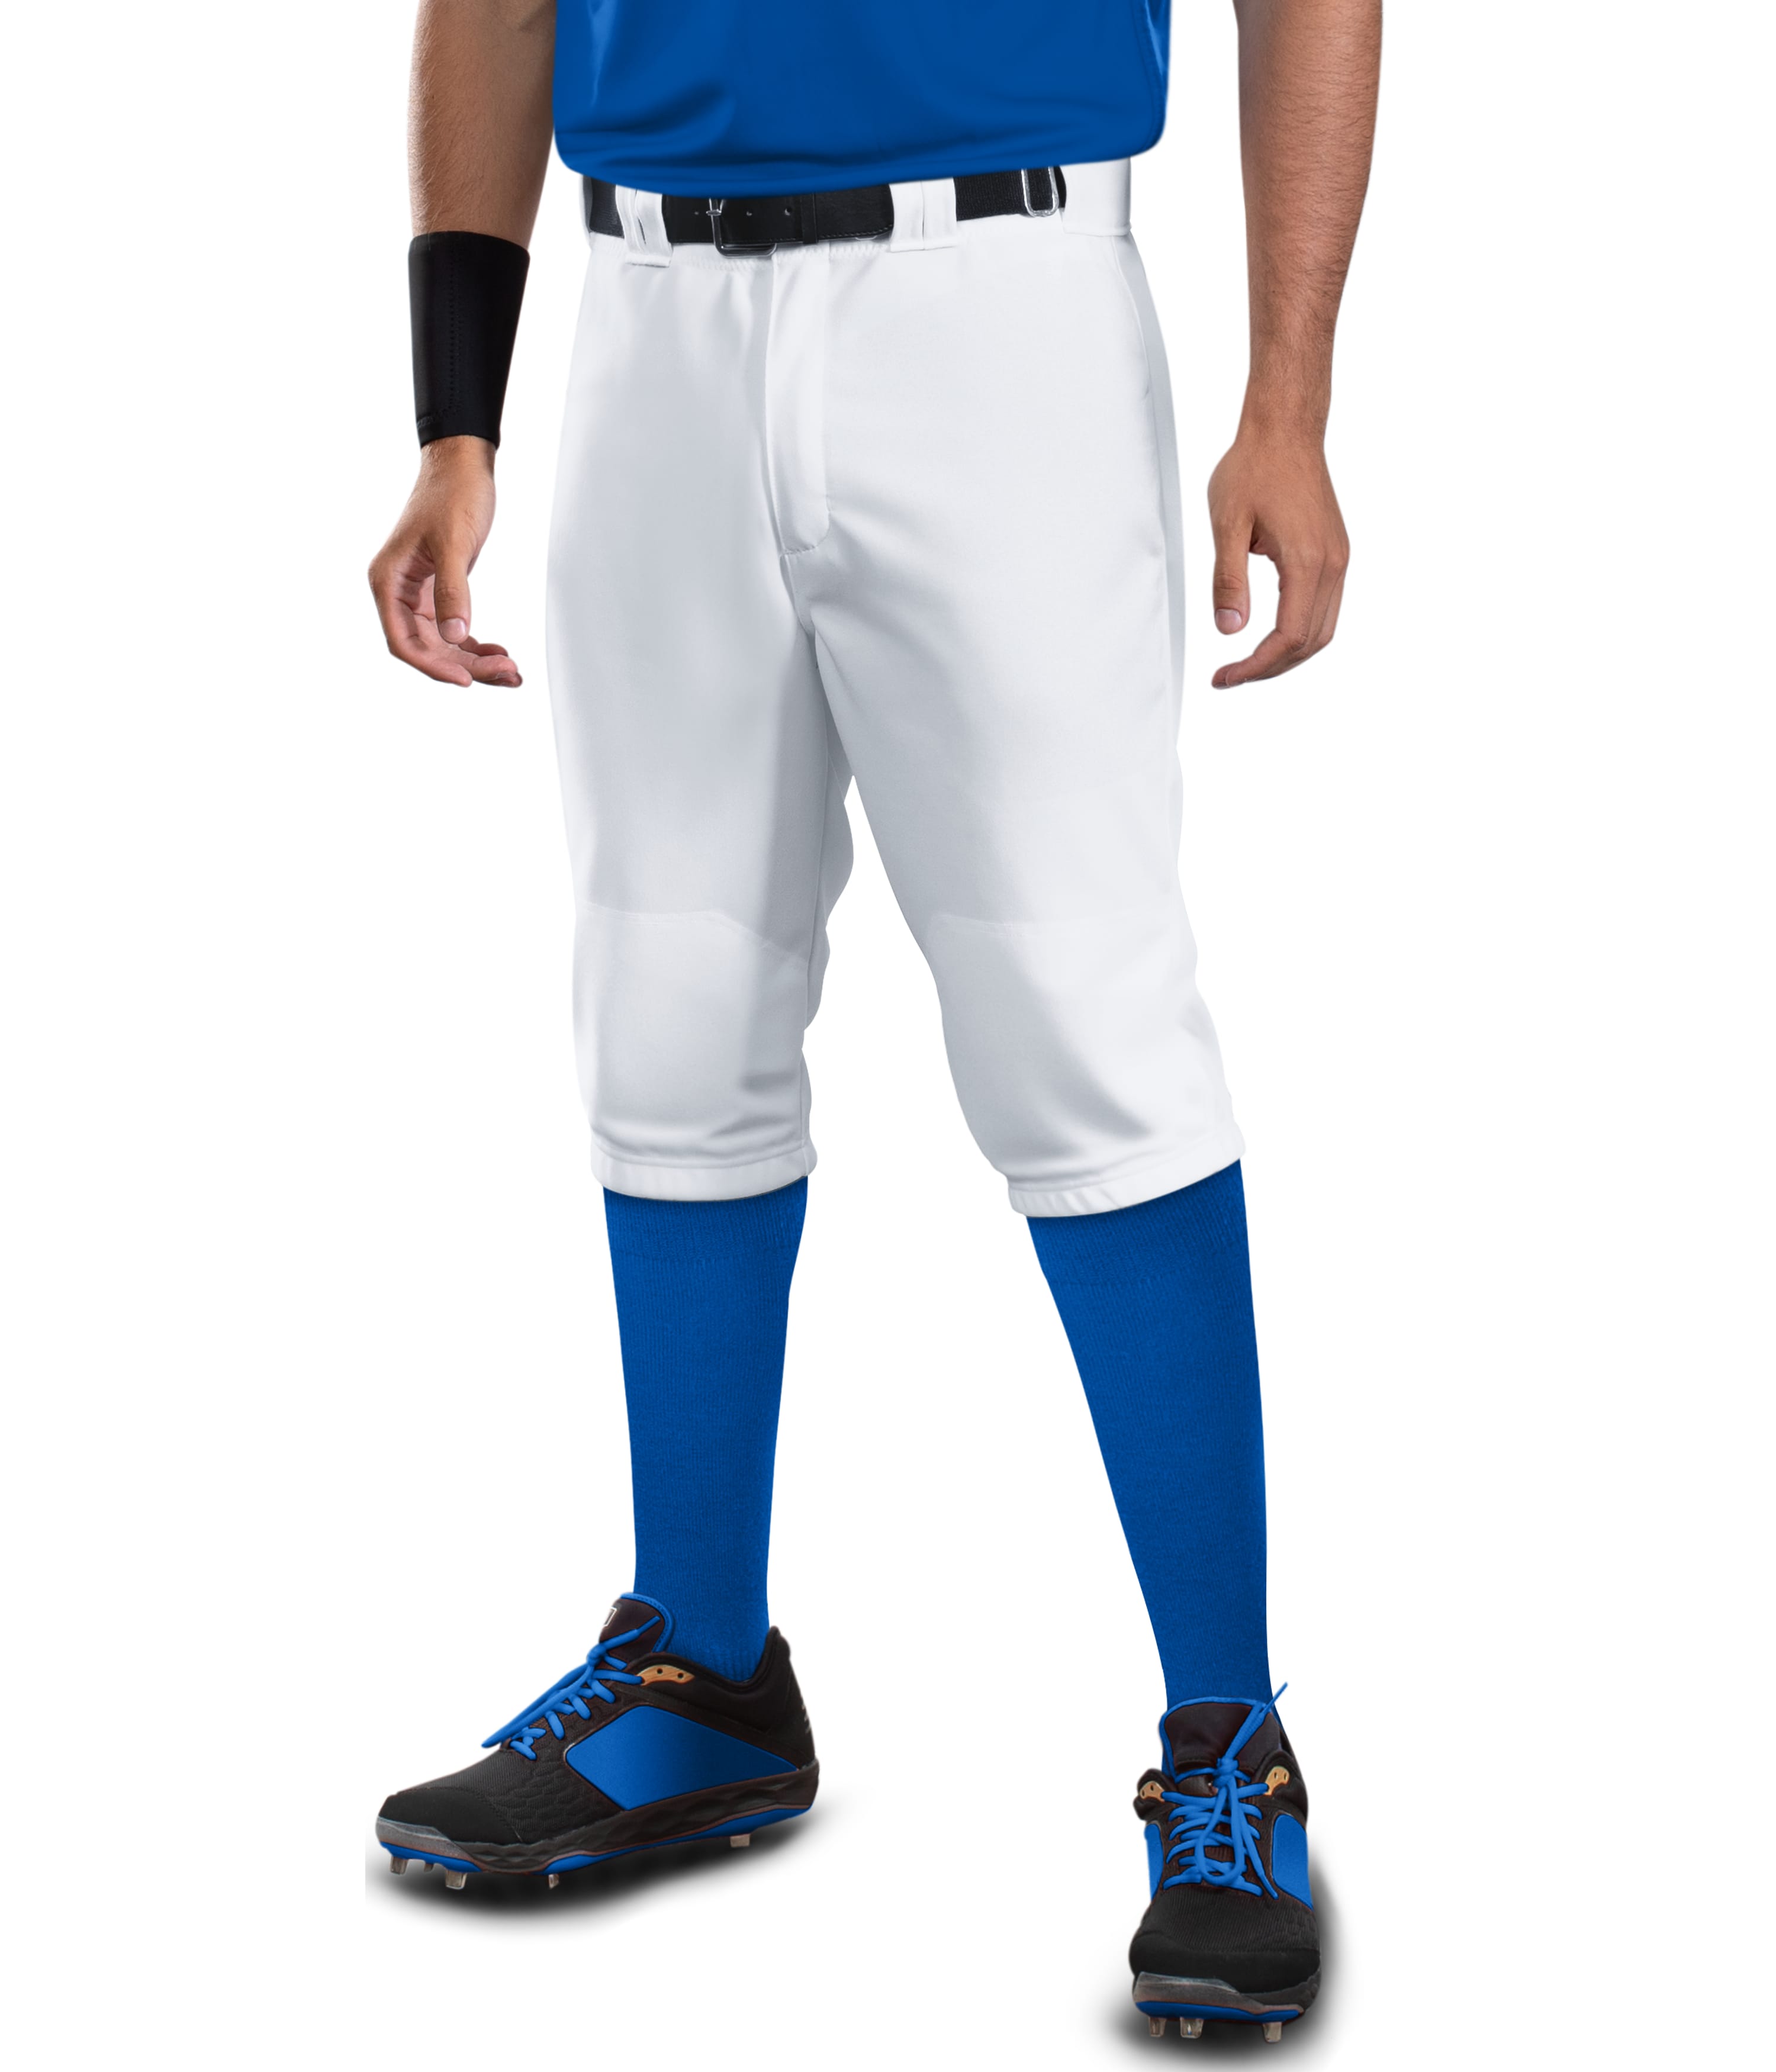  Mizuno Youth Select Short Knicker Baseball Pant, Below